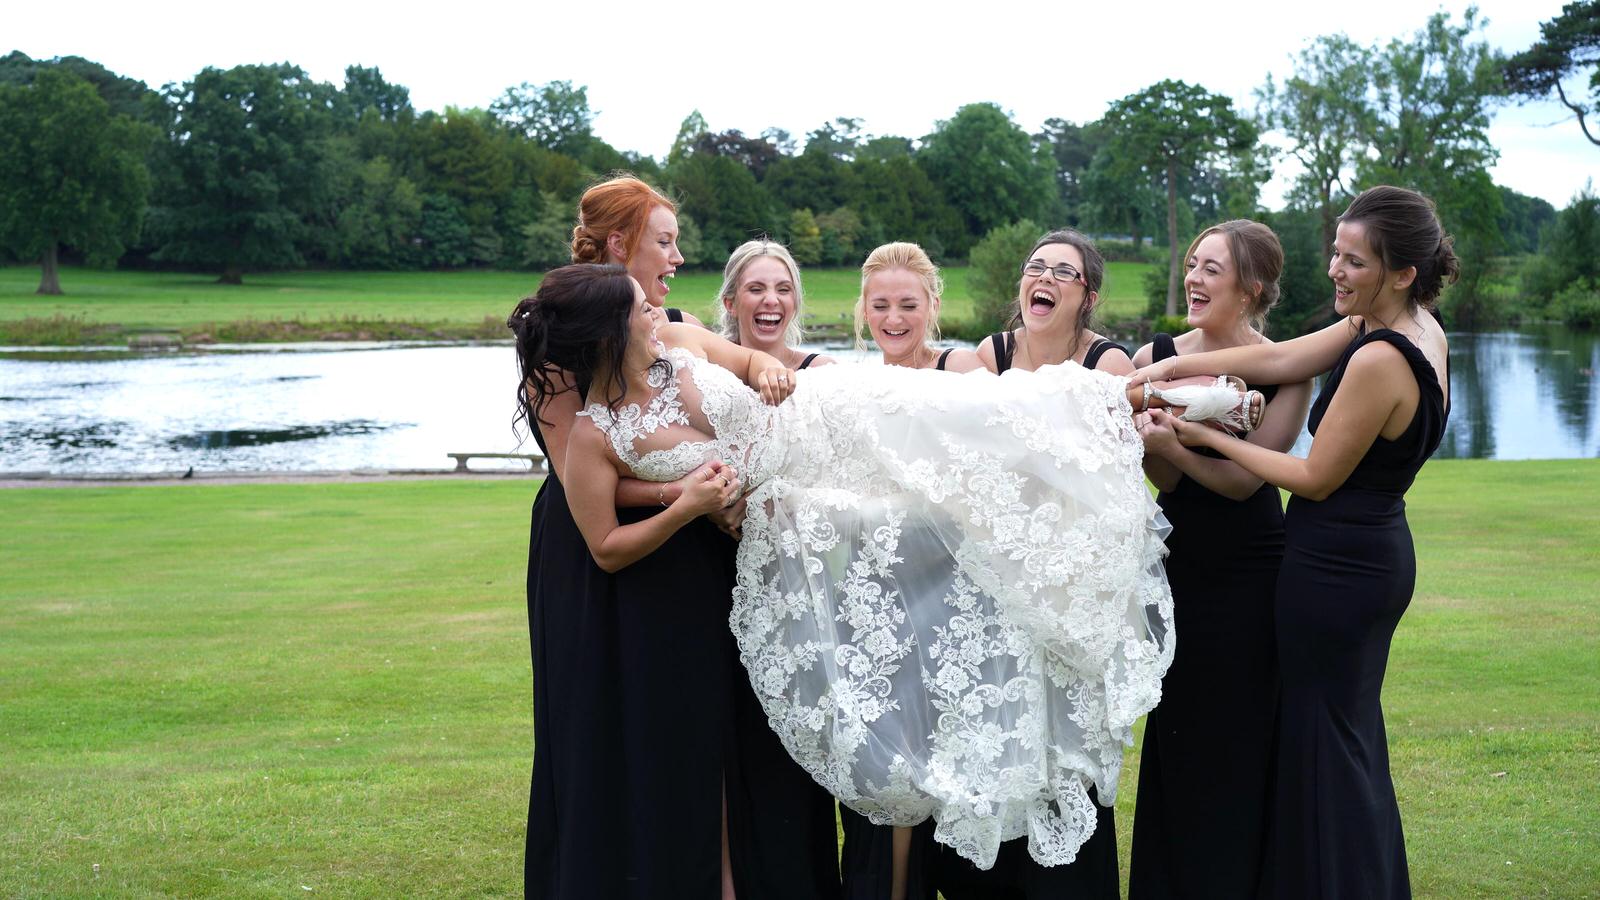 bridesmaids lift the bride for a fun photo